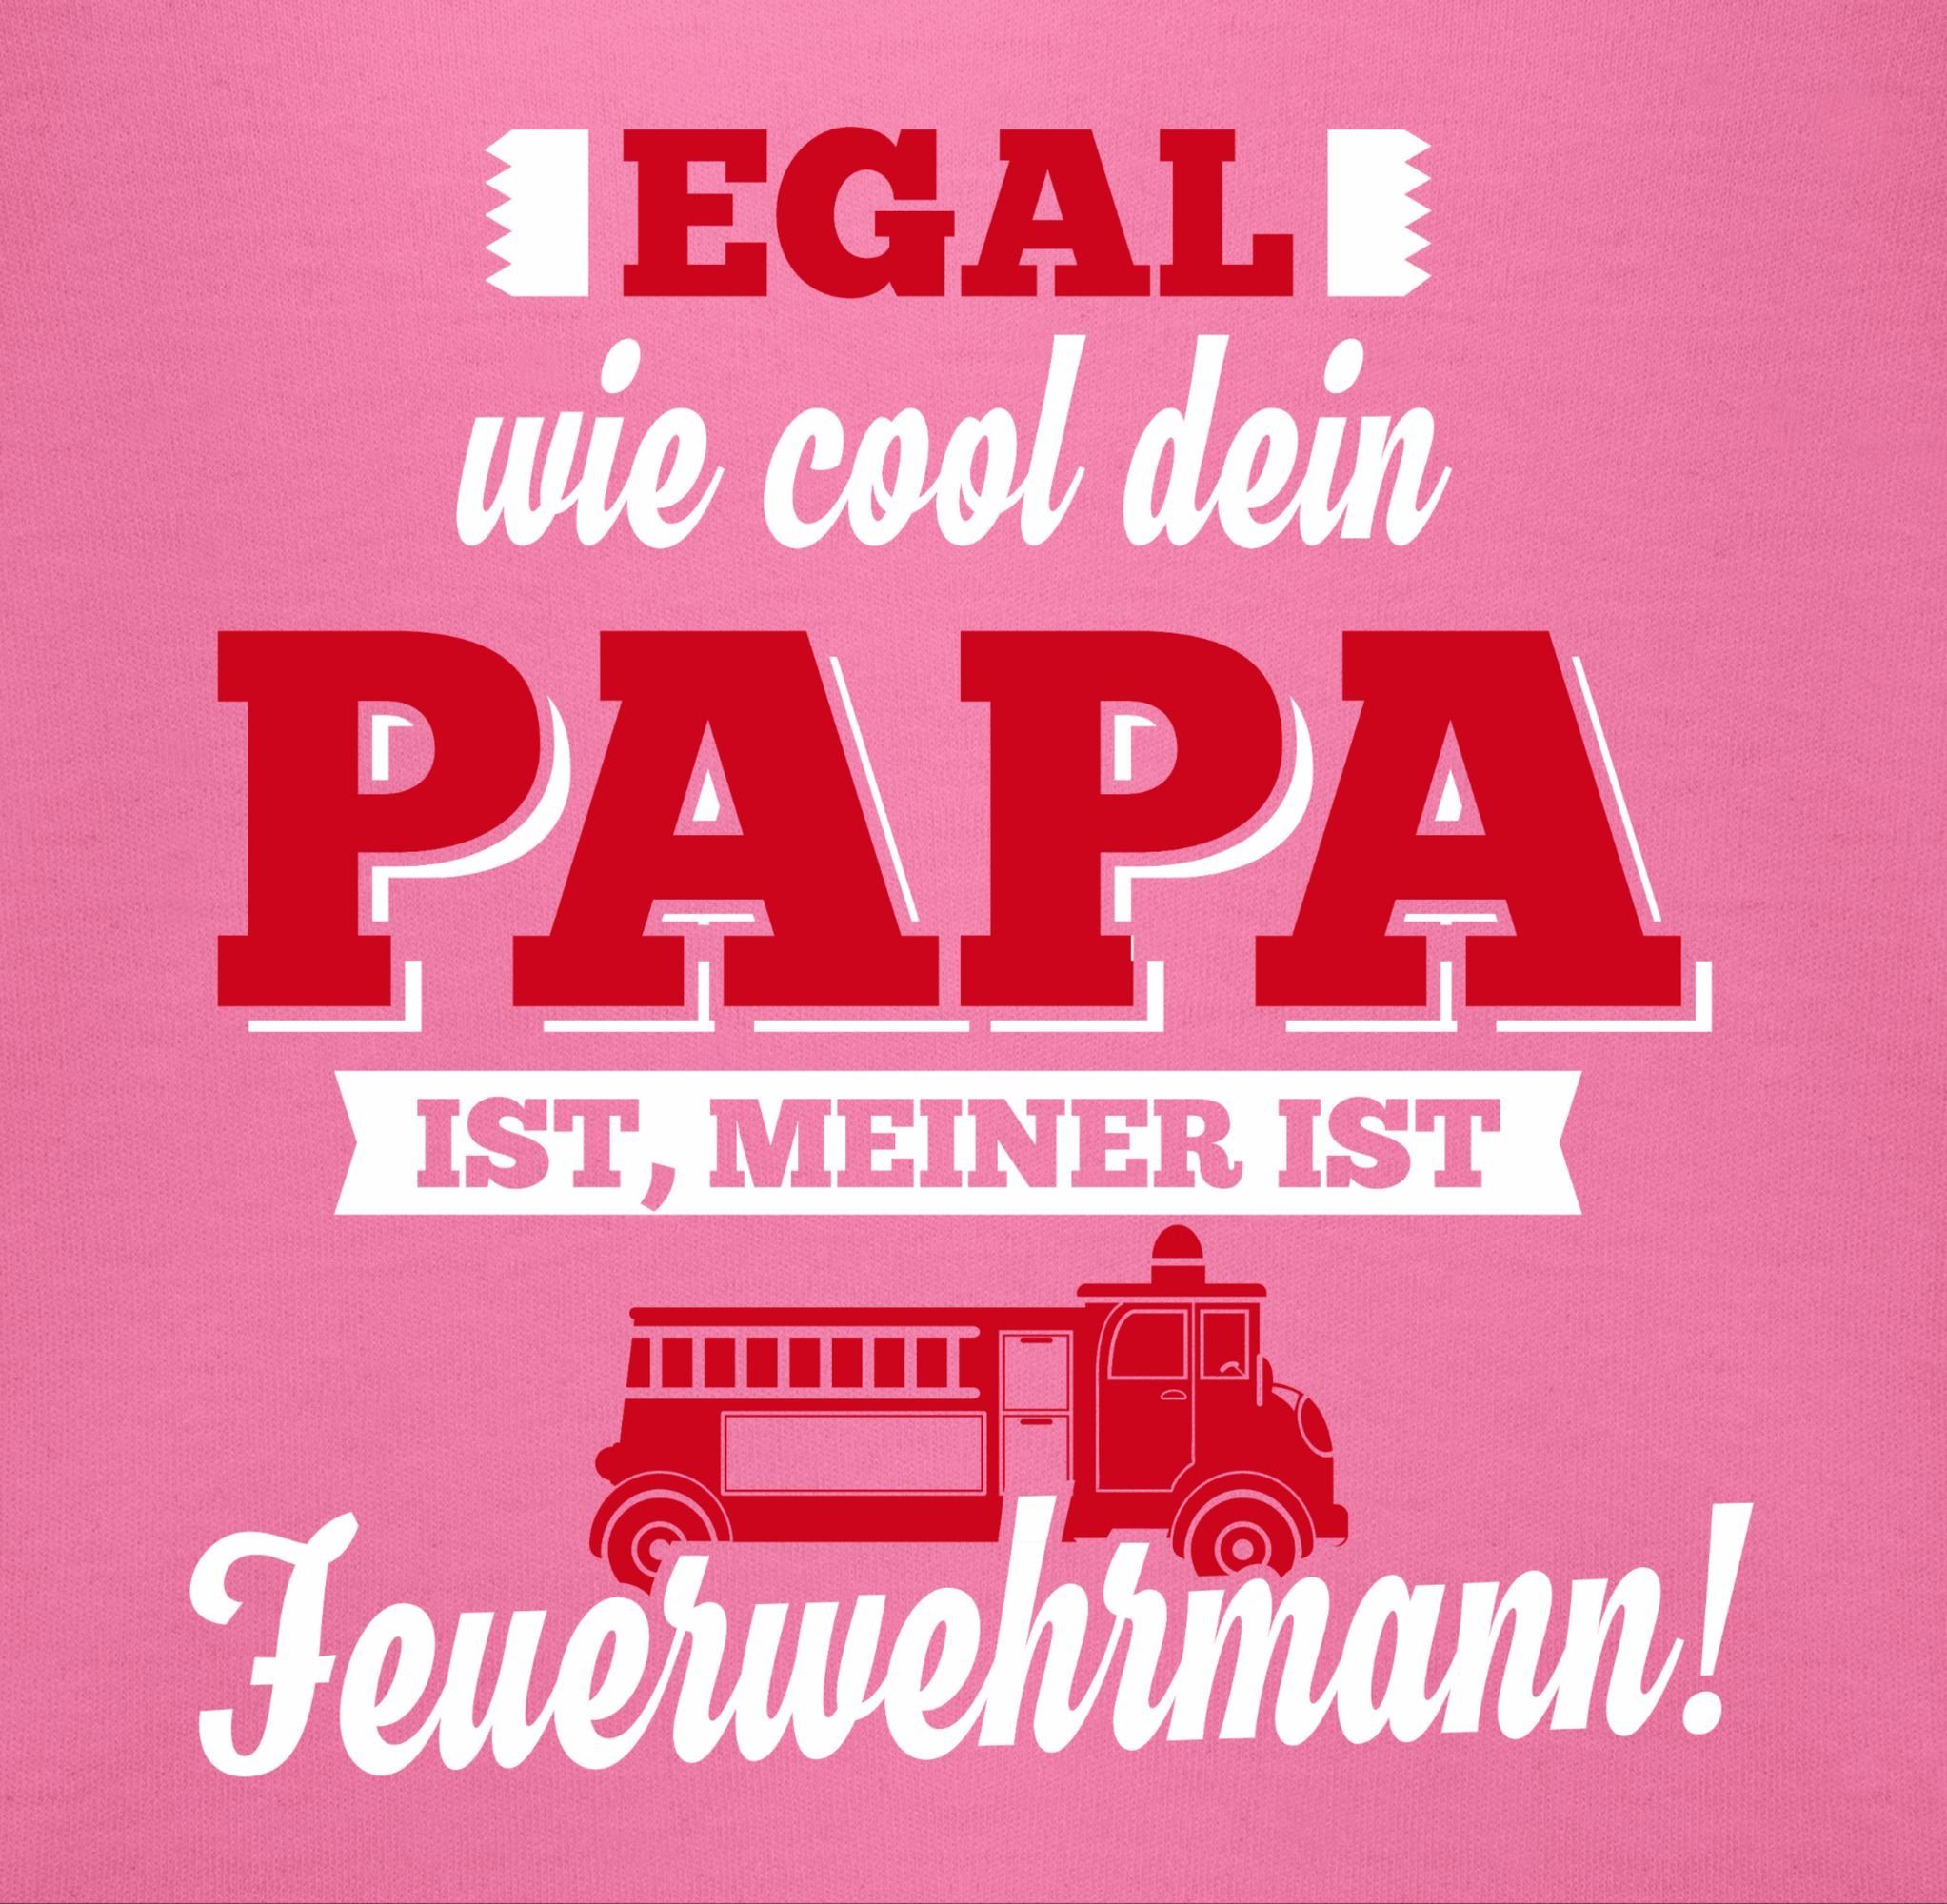 Pink Sweatshirt Feuerwehrmann Sprüche Shirtracer Baby Mein 2 Papa